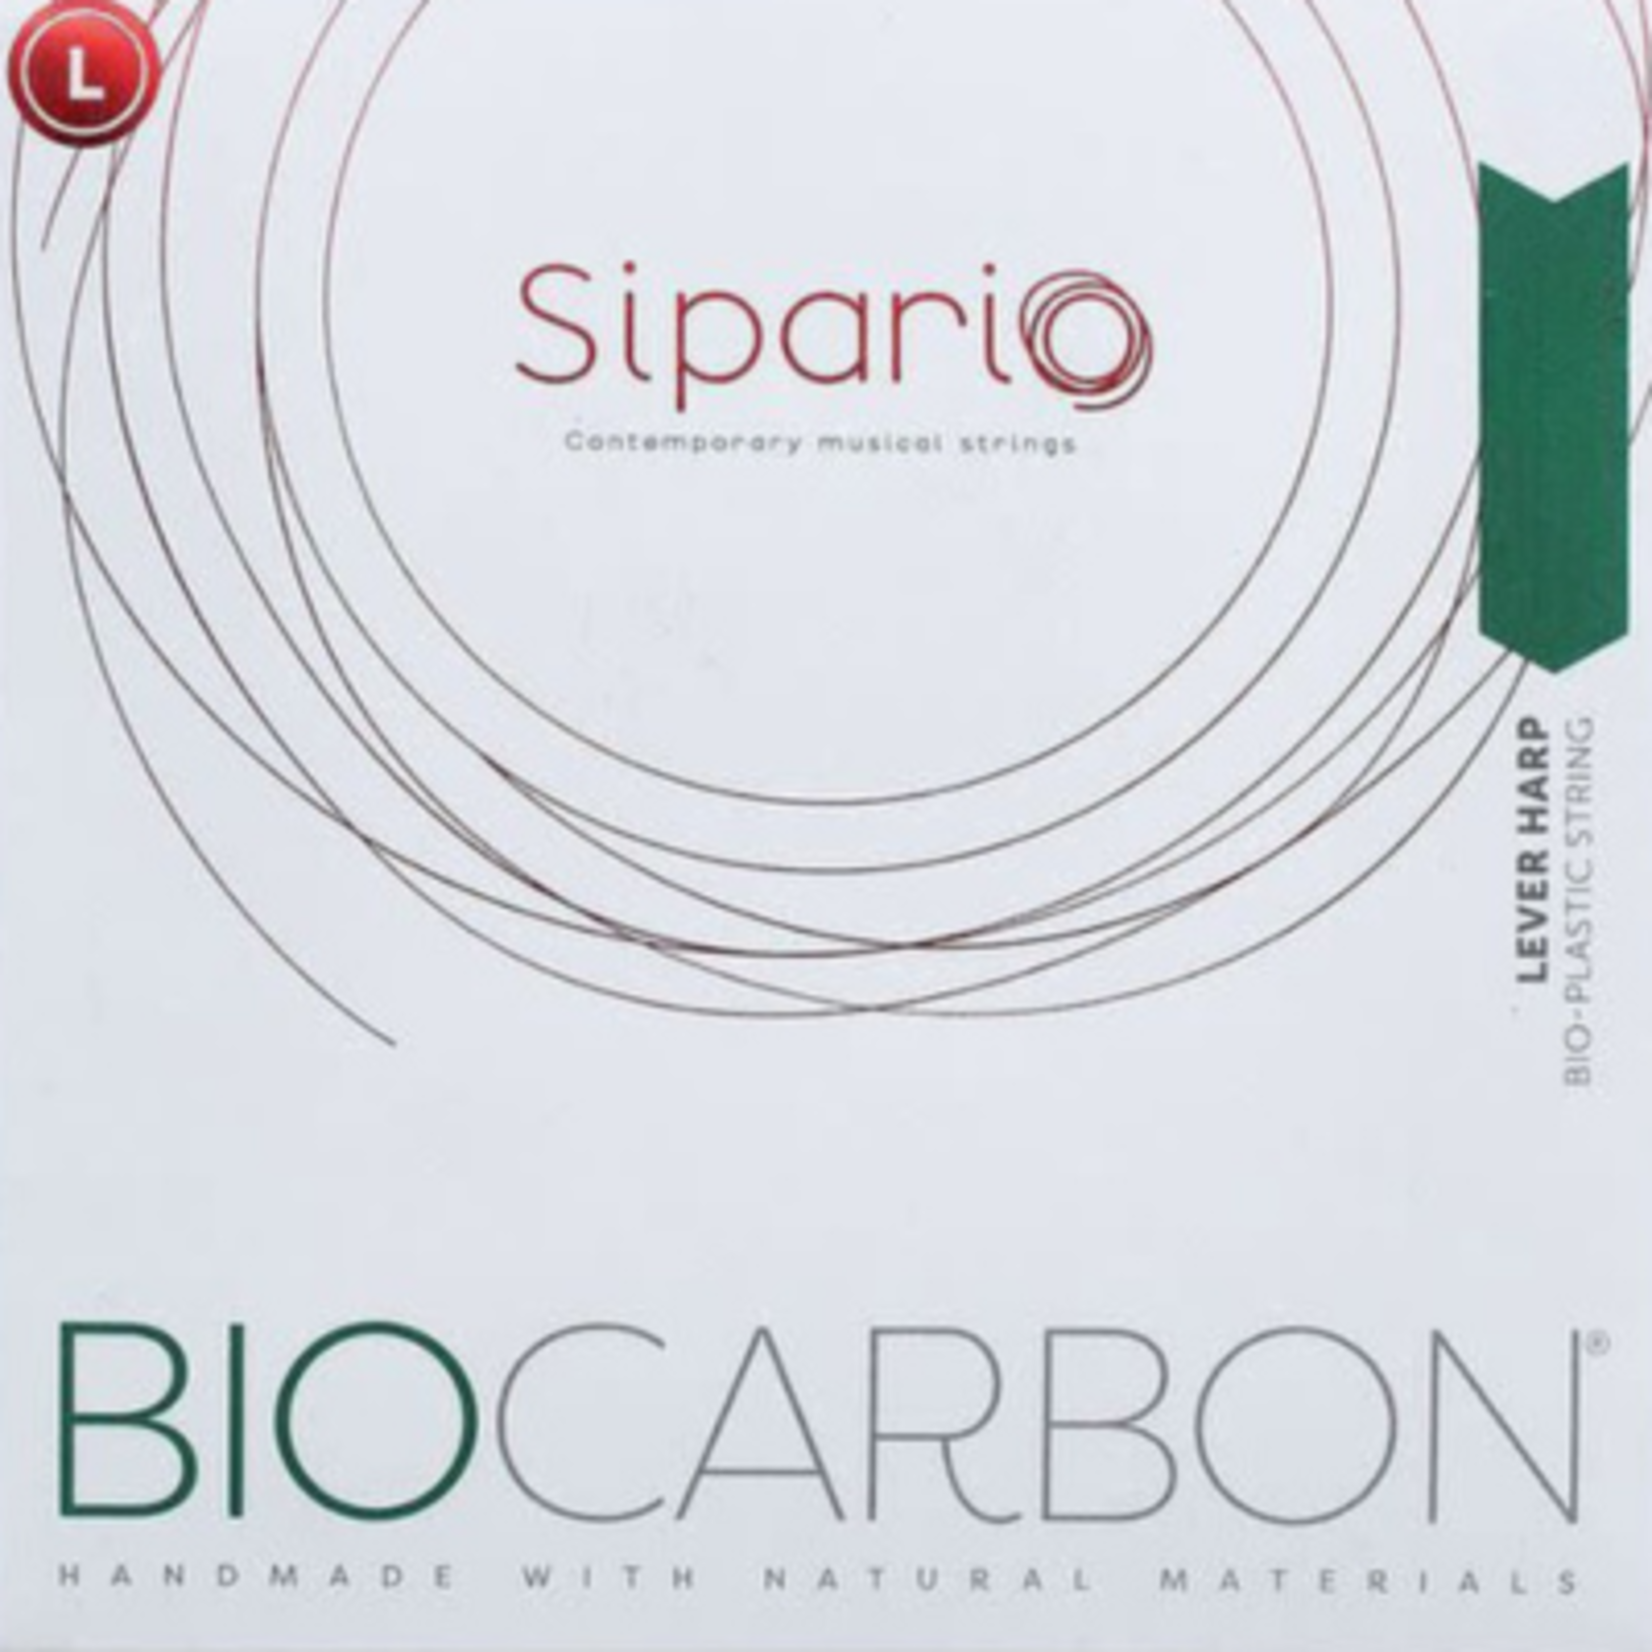 SIPARIO klep biocarbon (set) - 1ste octaaf - inclusief 5% korting